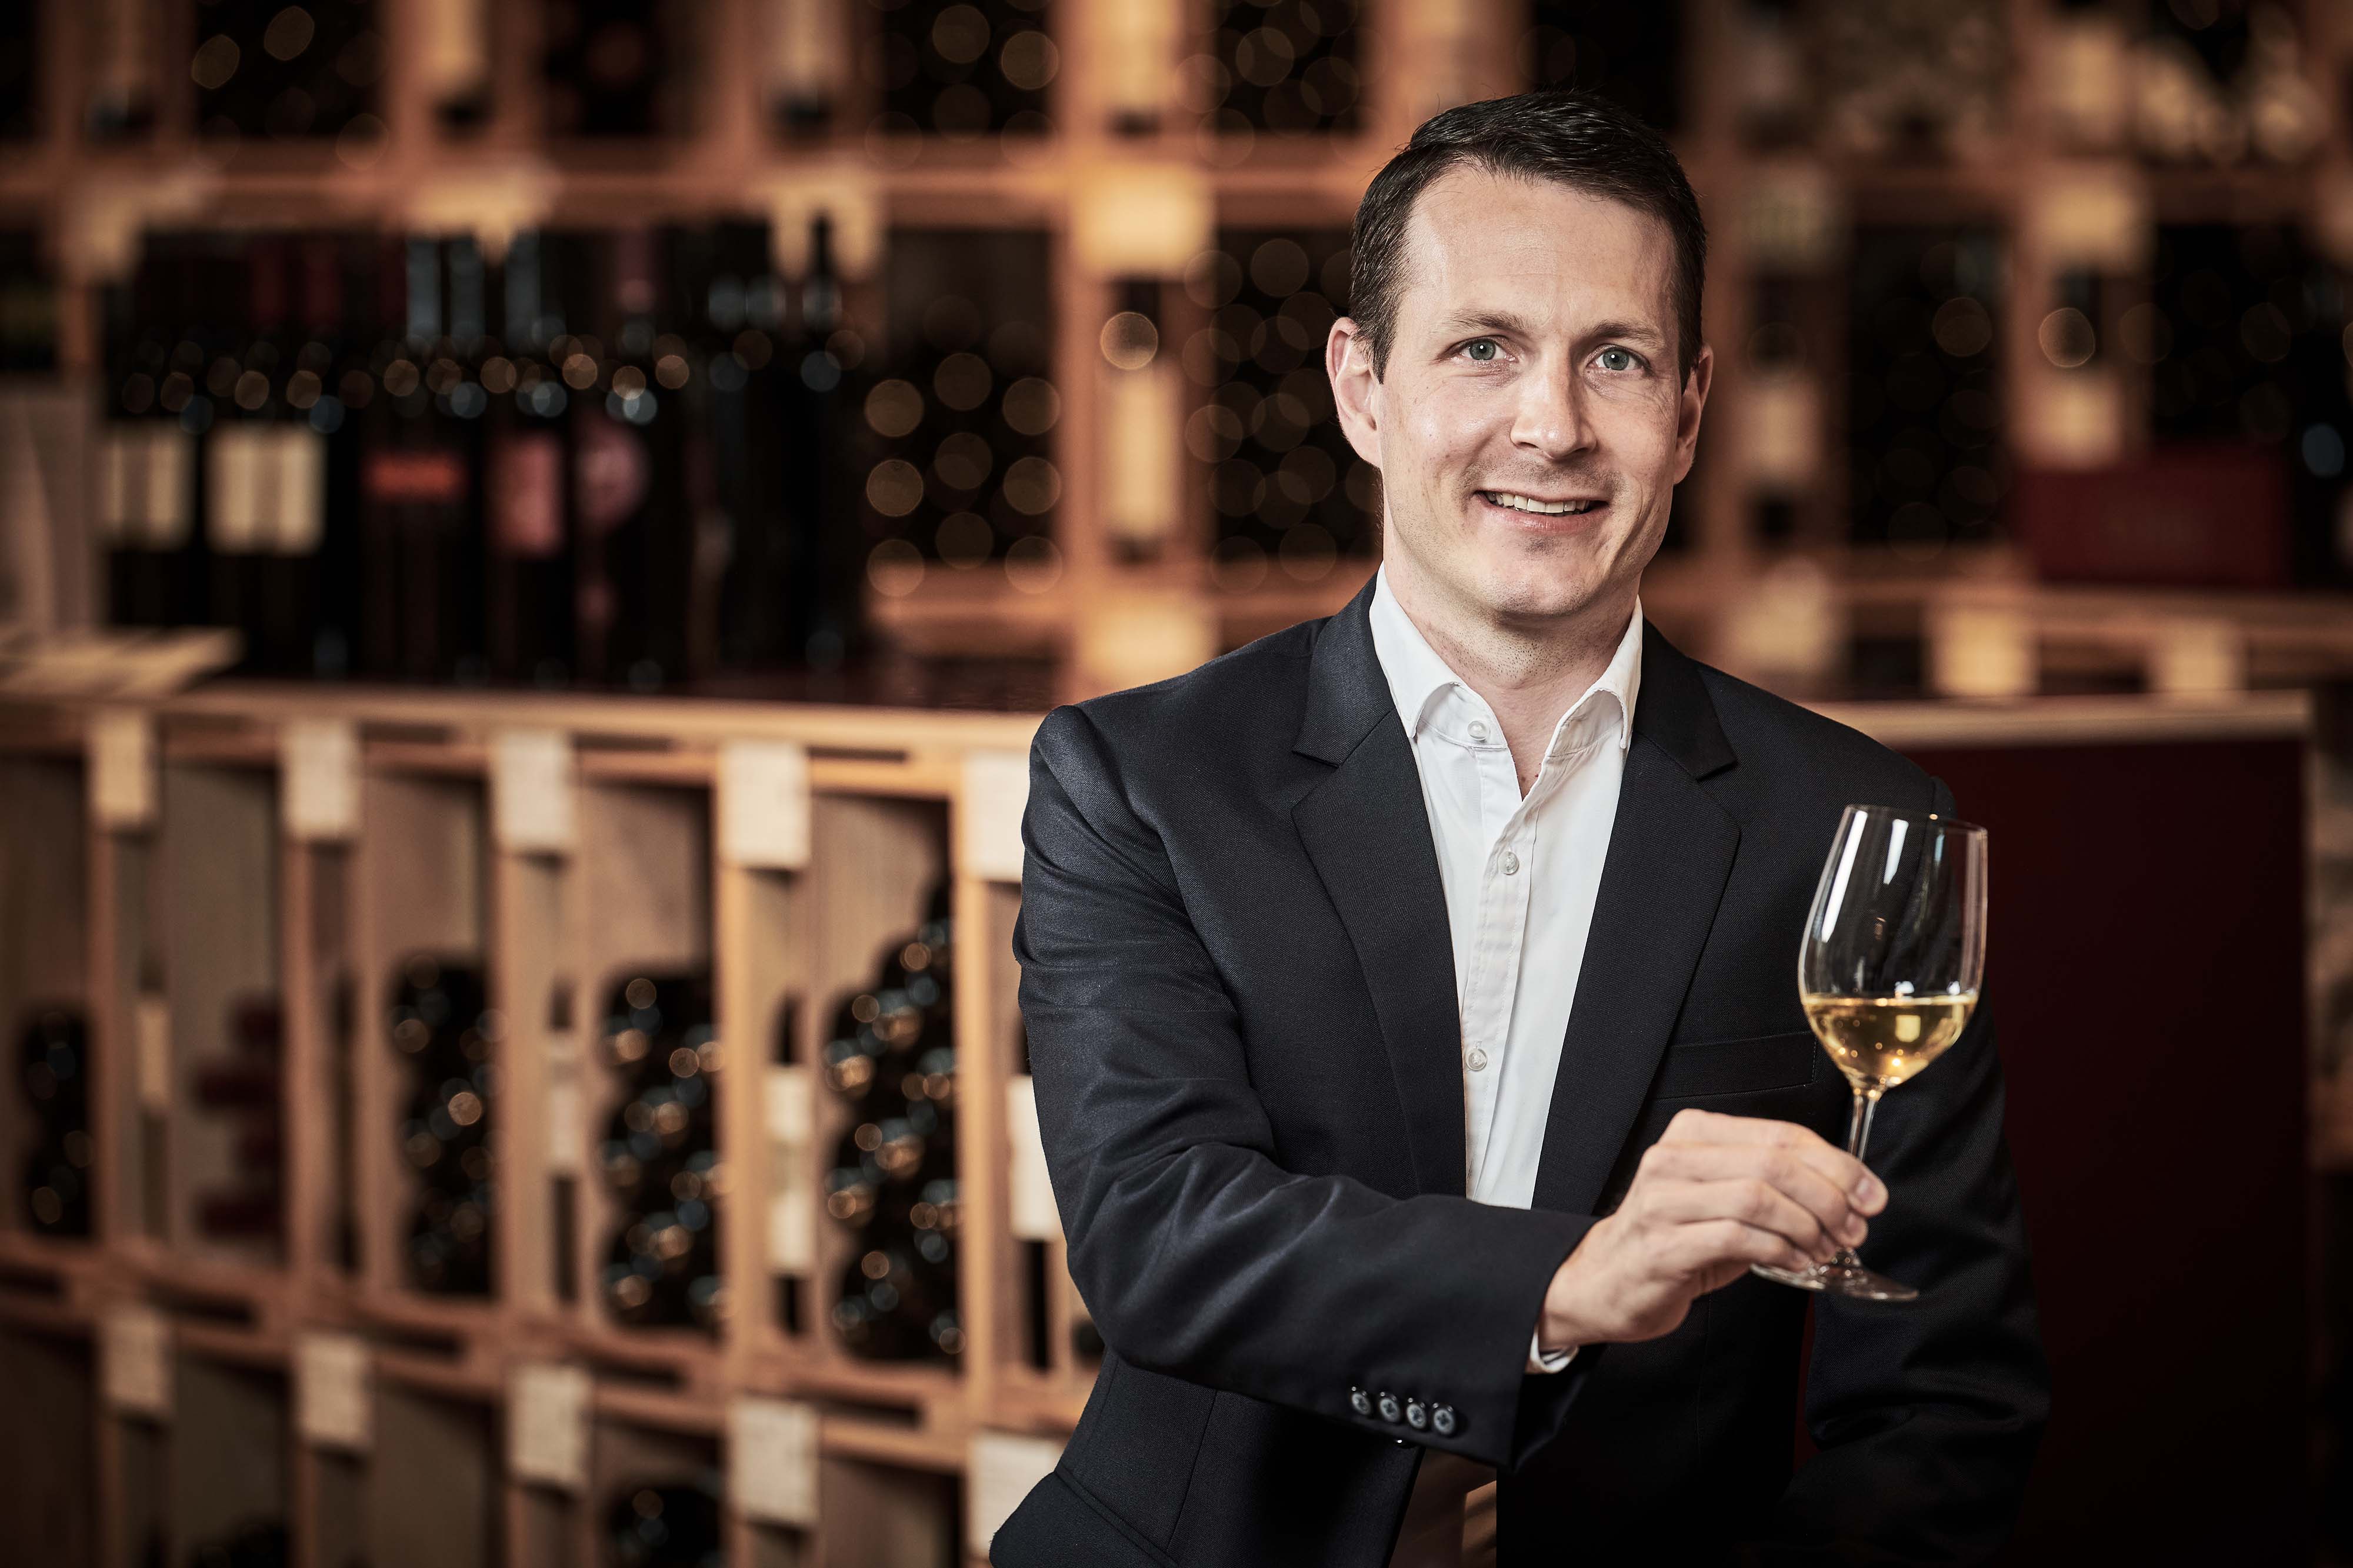 Mövenpick Wein eröffnet drei neue Standorte in der Schweiz